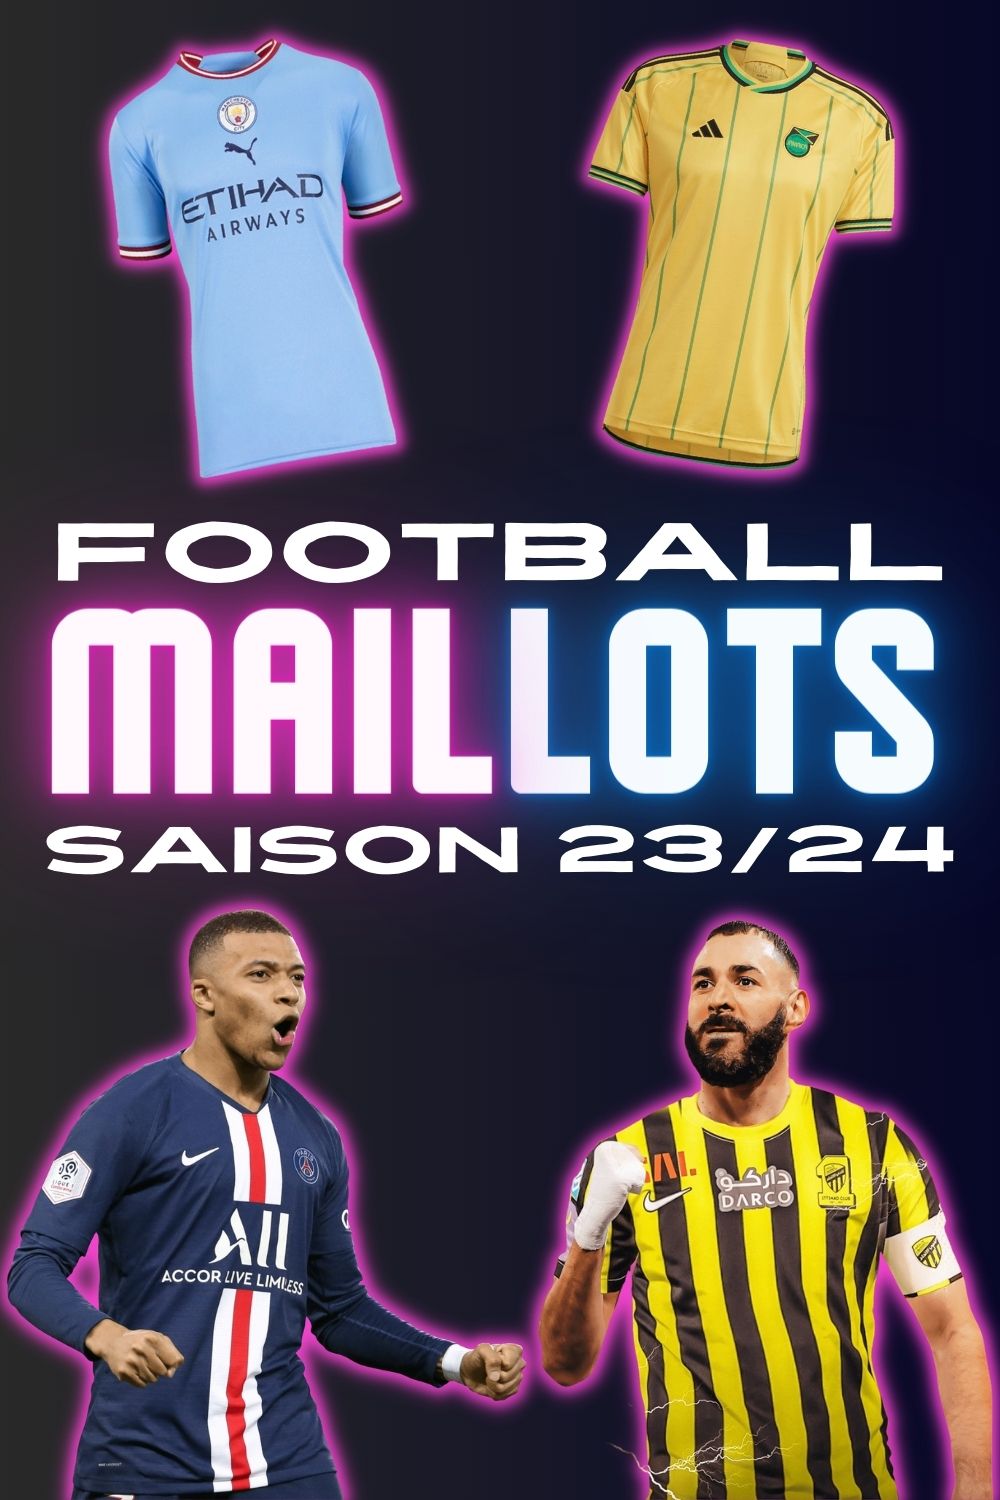 Maillots de foot saison 2023/2024_Mobile